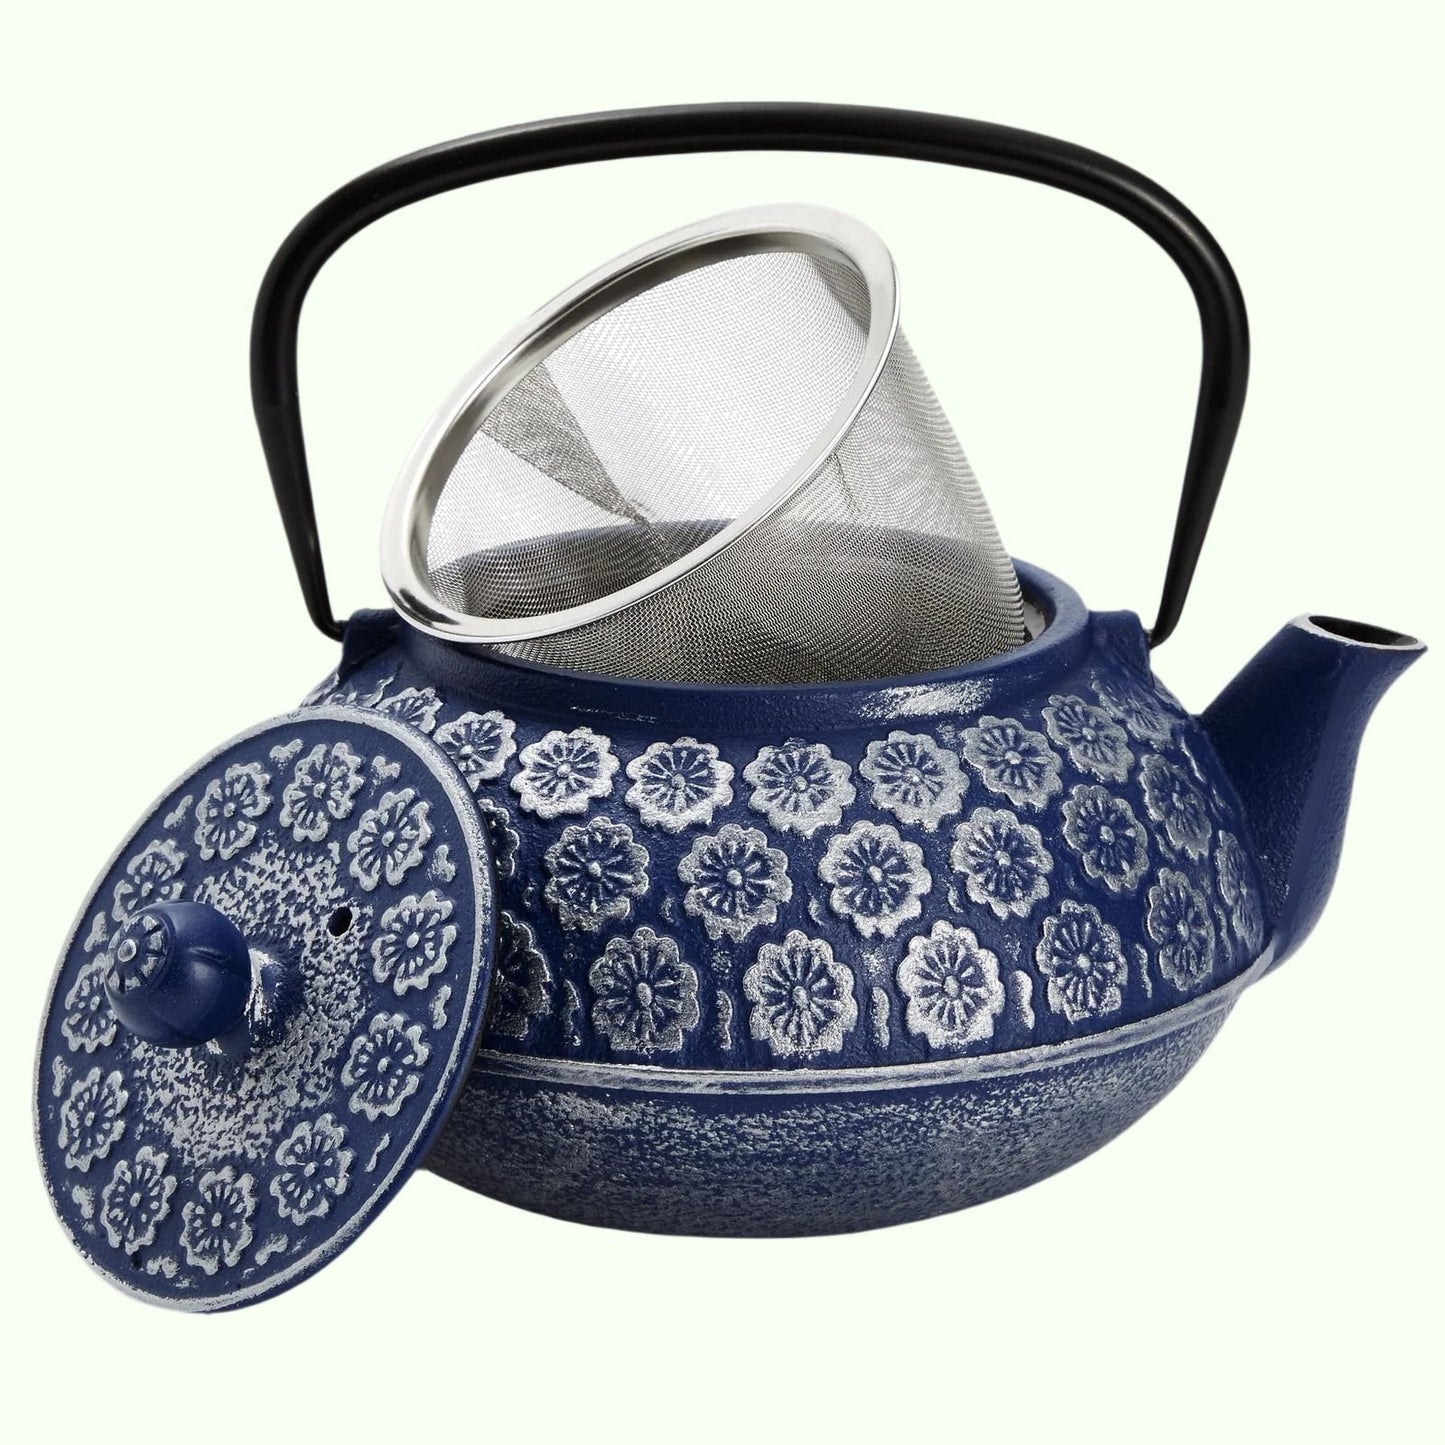 Blaue chinesische Teekanne aus Gusseisen mit Teesieb für losen Tee, inklusive Griff und abnehmbarem Deckel, 34 oz